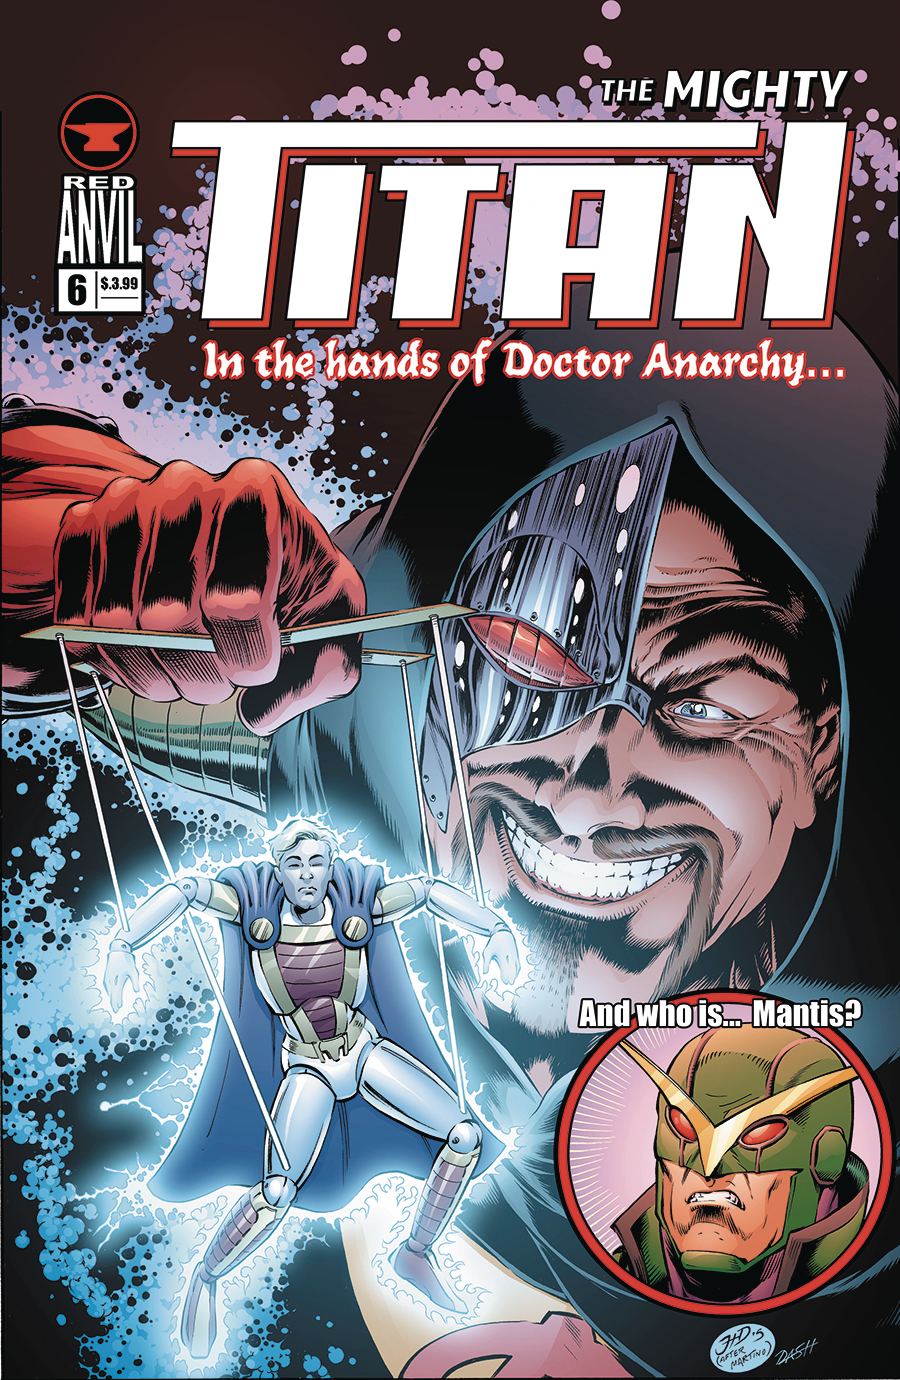 MIGHTY TITAN #6 (RES)